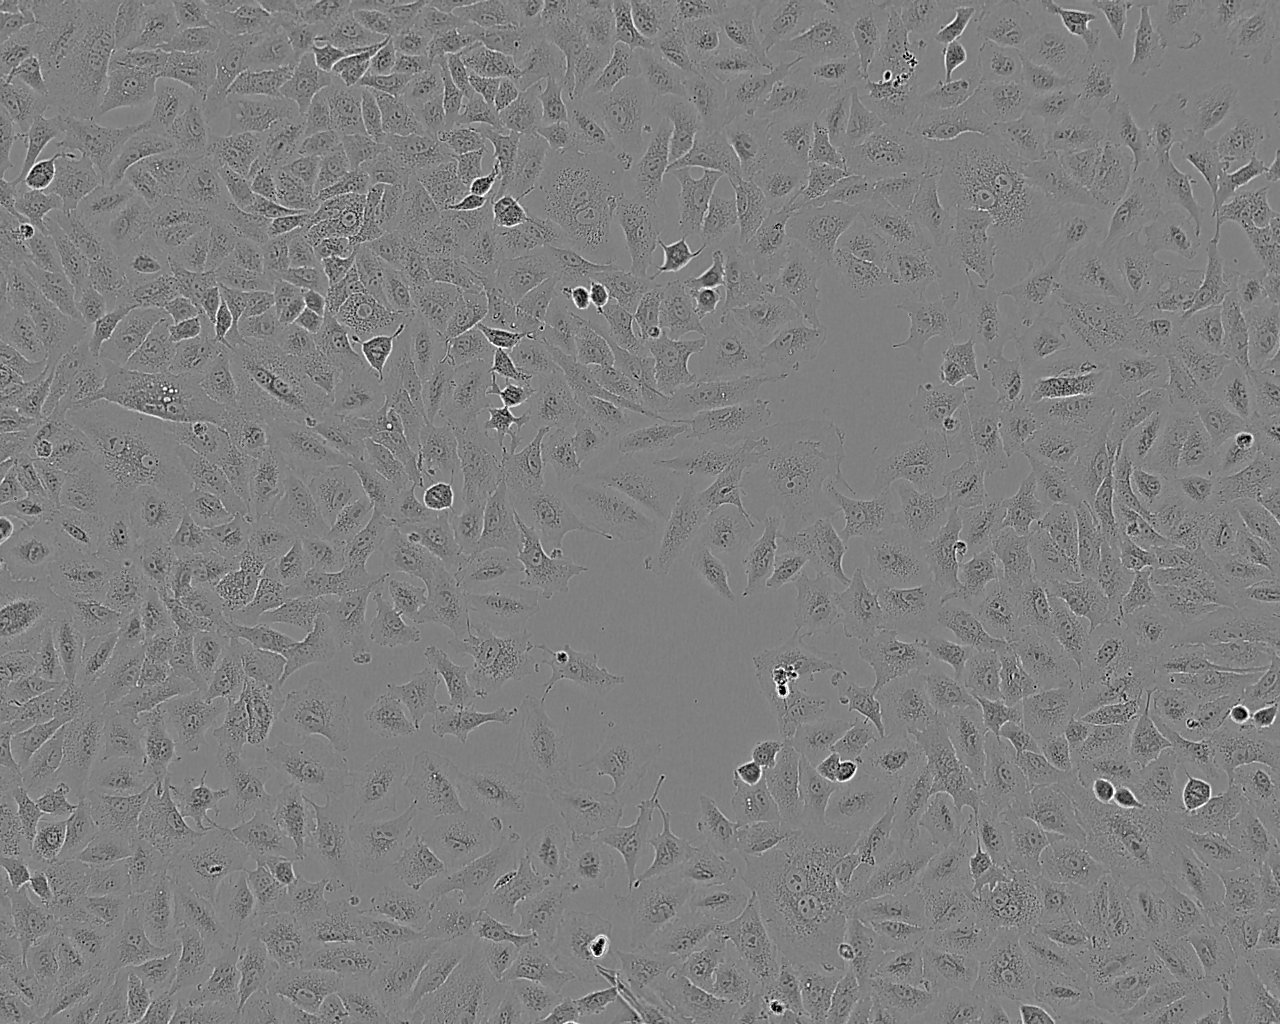 HCC1171 epithelioid cells人肺癌腺癌细胞系,HCC1171 epithelioid cells